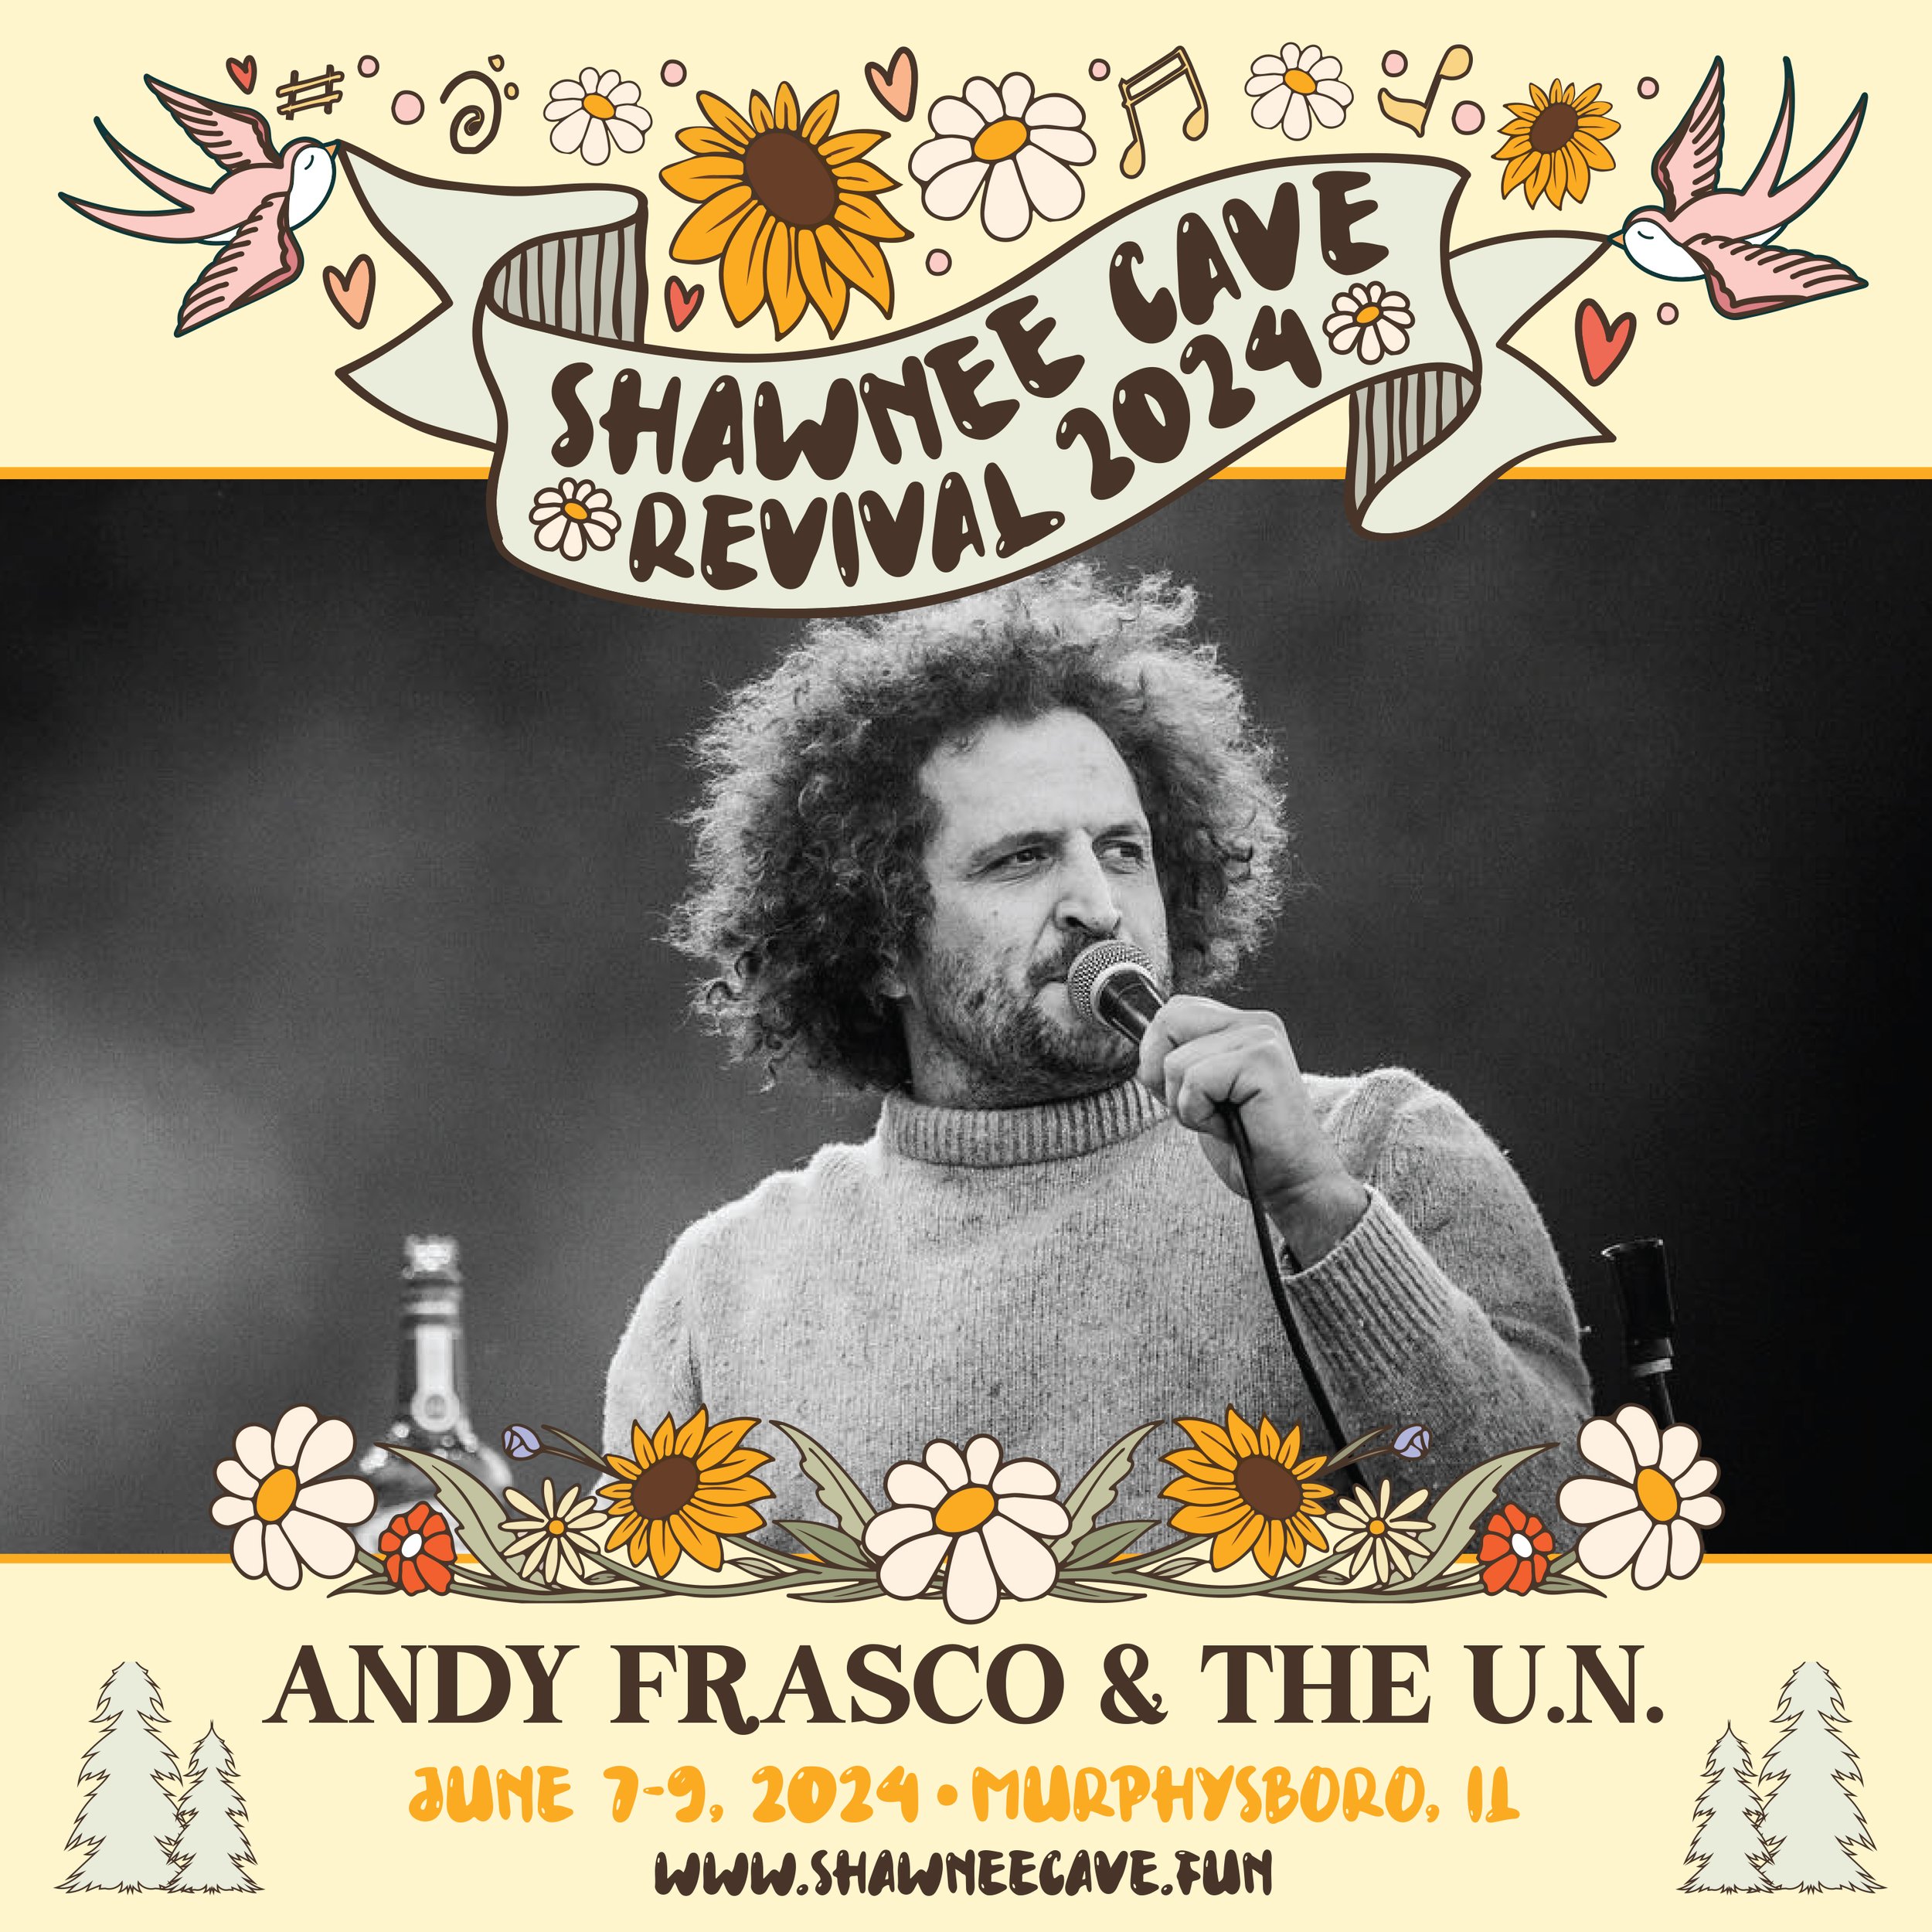 Andy Frasco & The U.N. - Shawnee Cave Revival.jpg